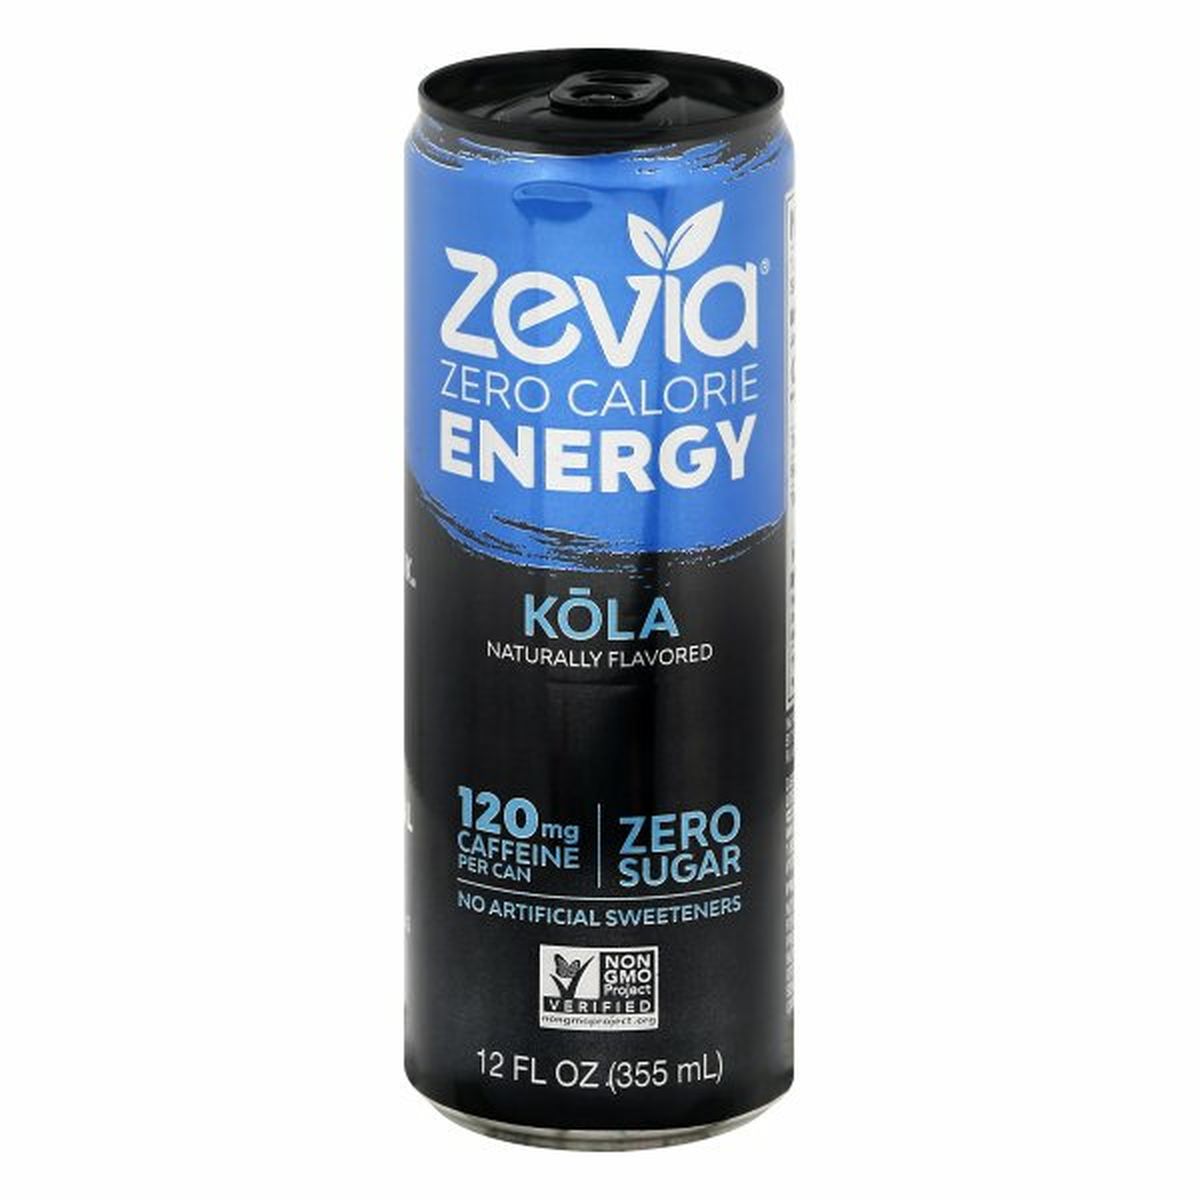 Calories in Zevia Energy Drink, Zero Calorie, Kola